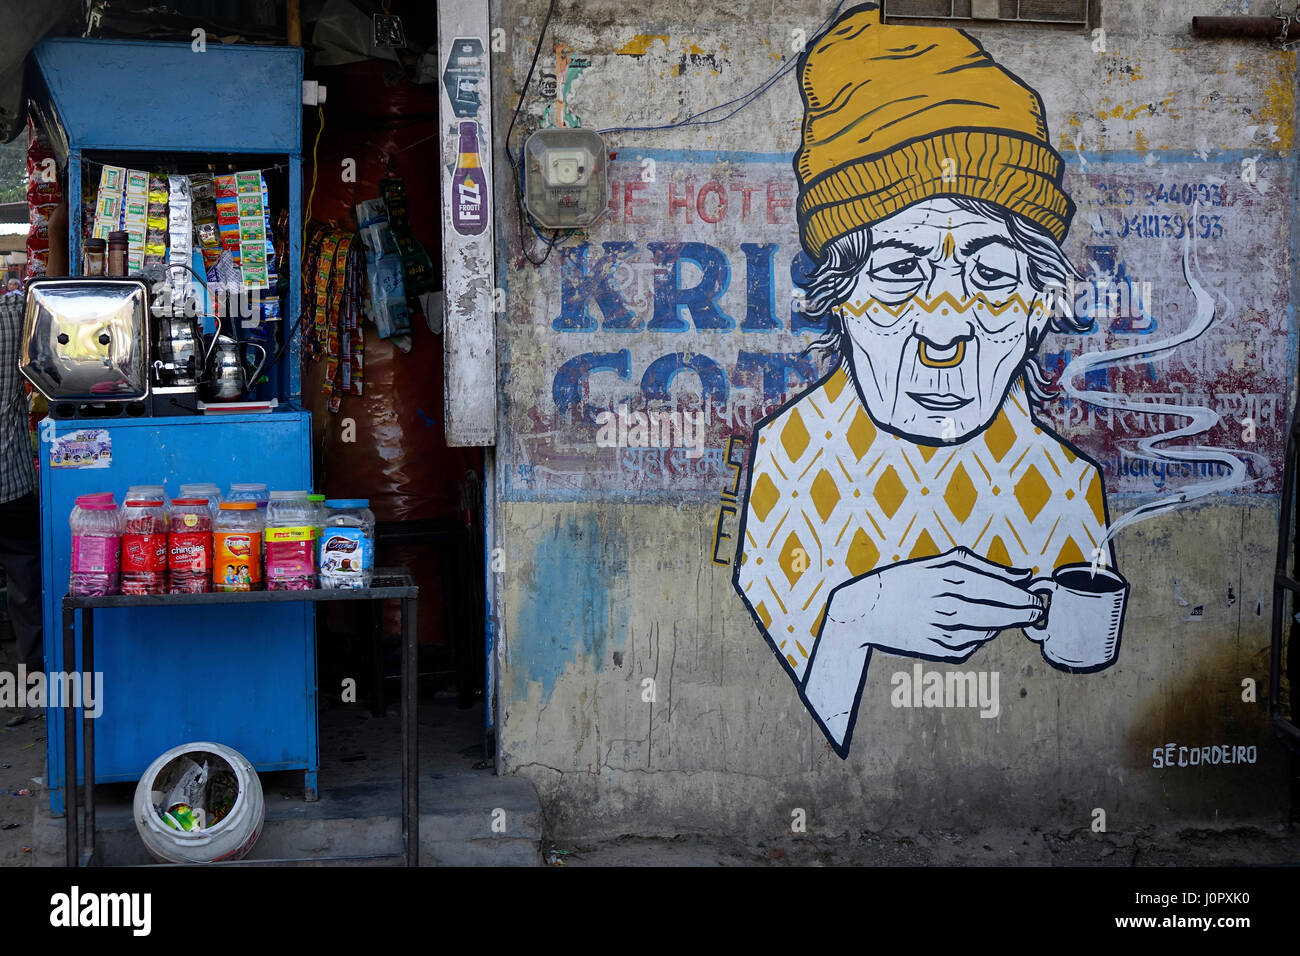 Alte Dame mit Kaffee Becher Straßenkunst am lokalen Coffee-Shop Abbildung Rishikesh, Uttarakhand, Indien Stockfoto